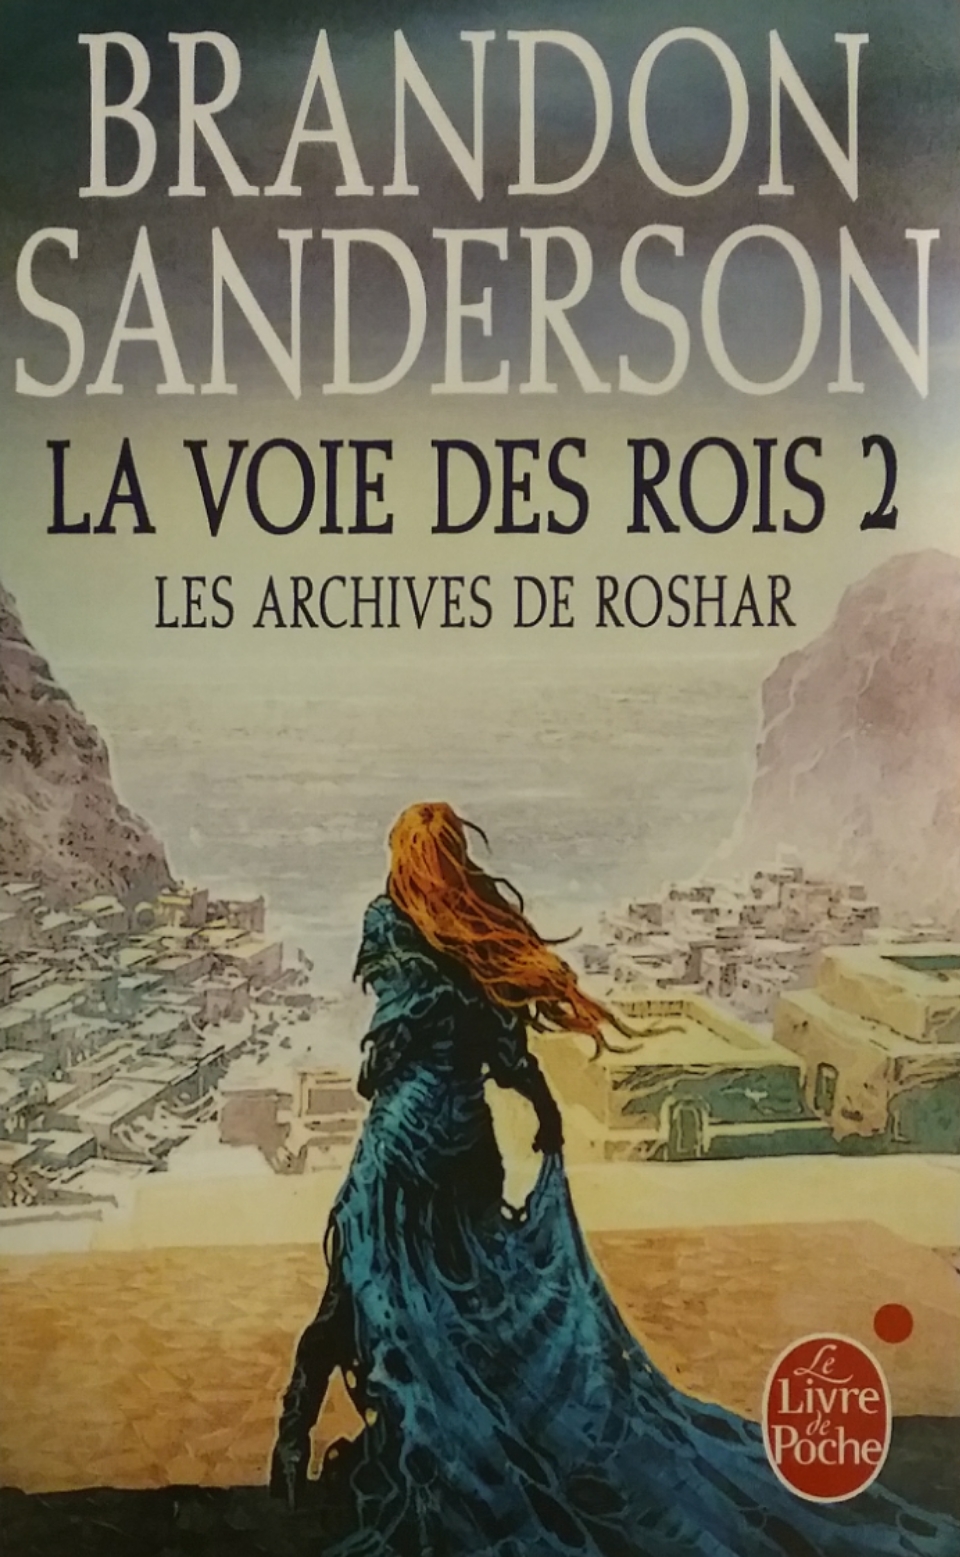 Les archives de Roshar Tome 1 la voie des rois partie 2 Brandon Sanderson